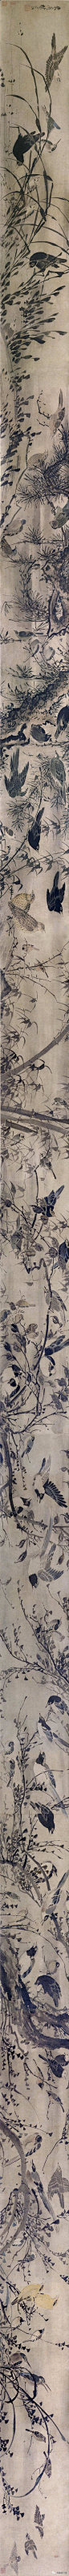 明 林良《灌木集禽图》长卷 北京故宫博物院藏